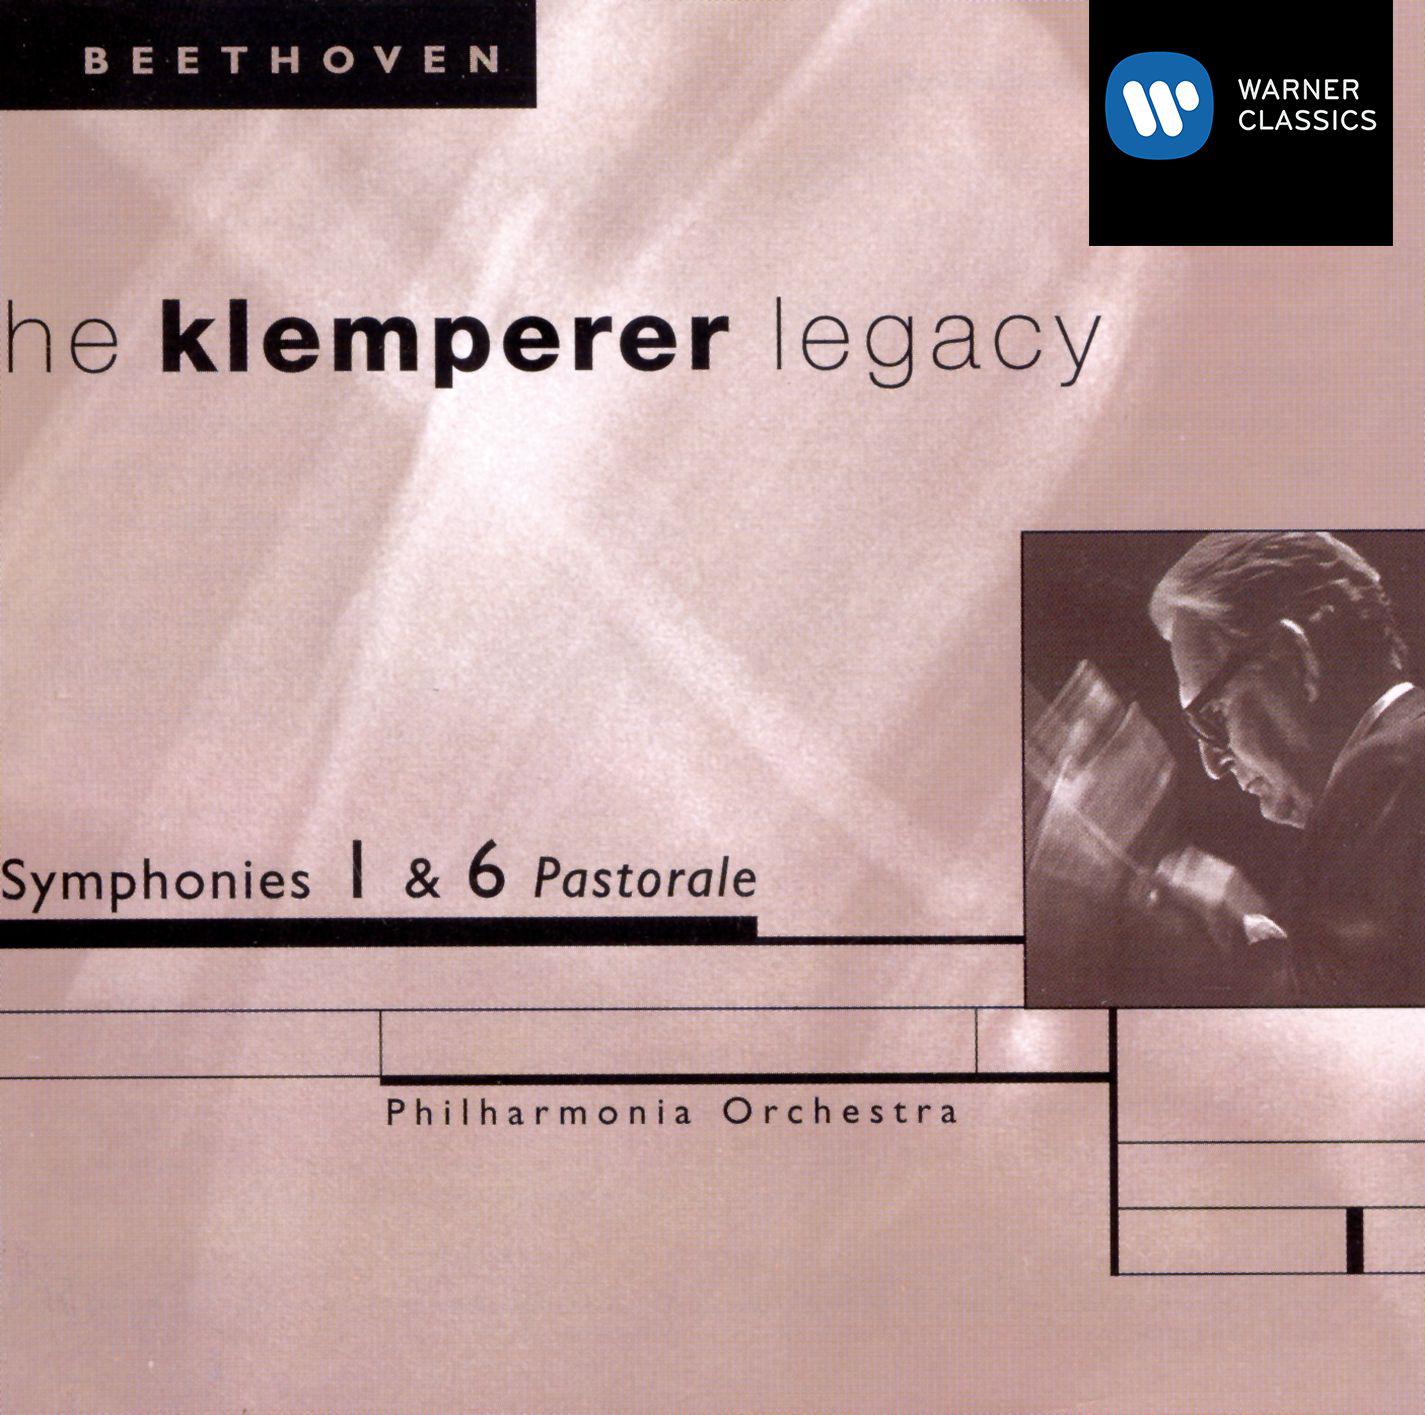 Beethoven: Symphonies Nos. 1 & 6 - The Klemperer Legacy